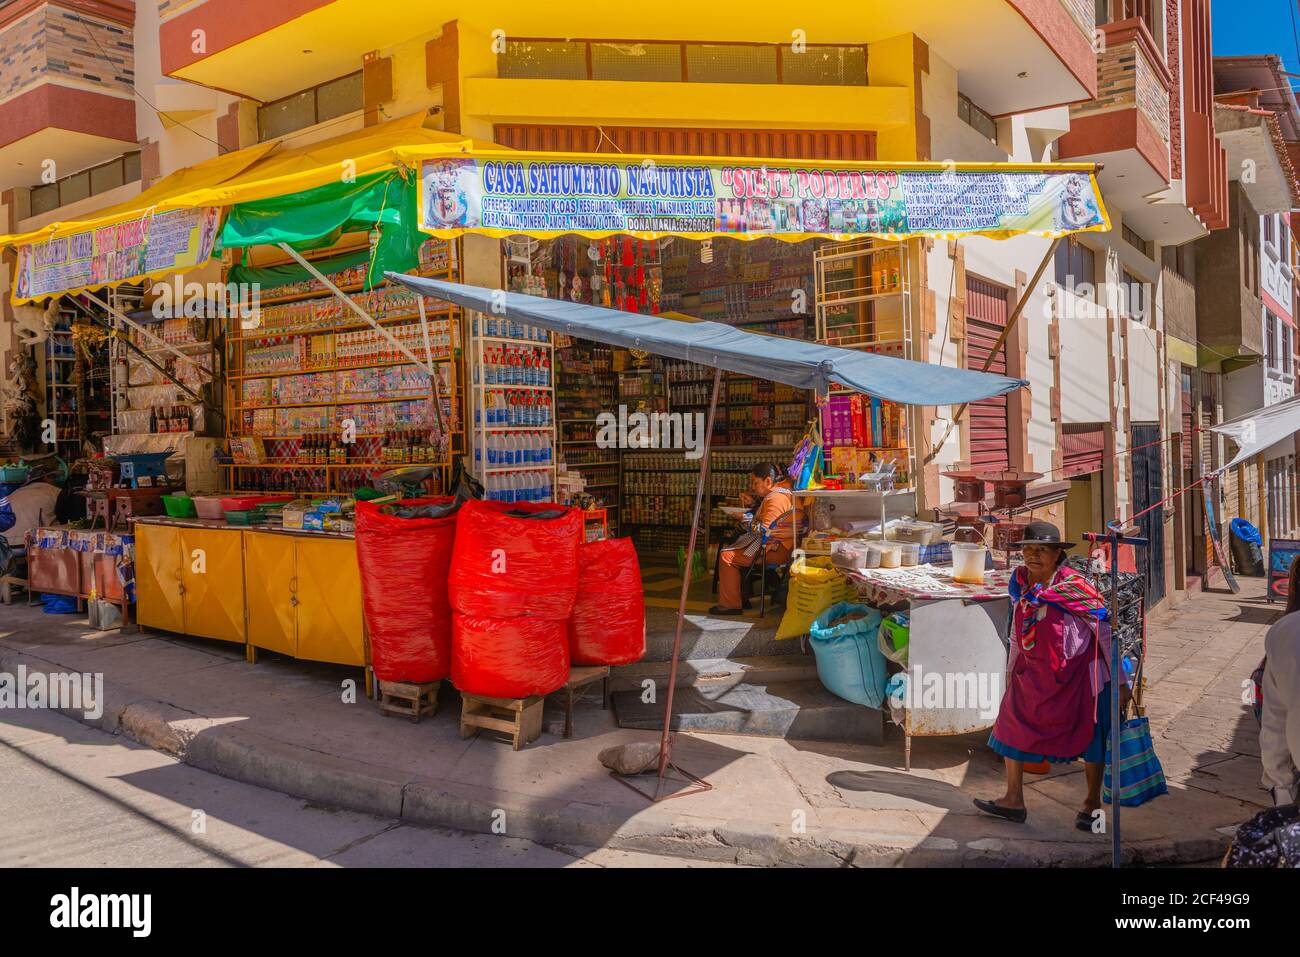 Mercado Campesinosor Bauernmarkt, Sucre,Hauptstadt der Verfassung Boliviens,Hauptstadt des Departements Chuquisaca, Bolivien, Lateinamerika.´ Stockfoto